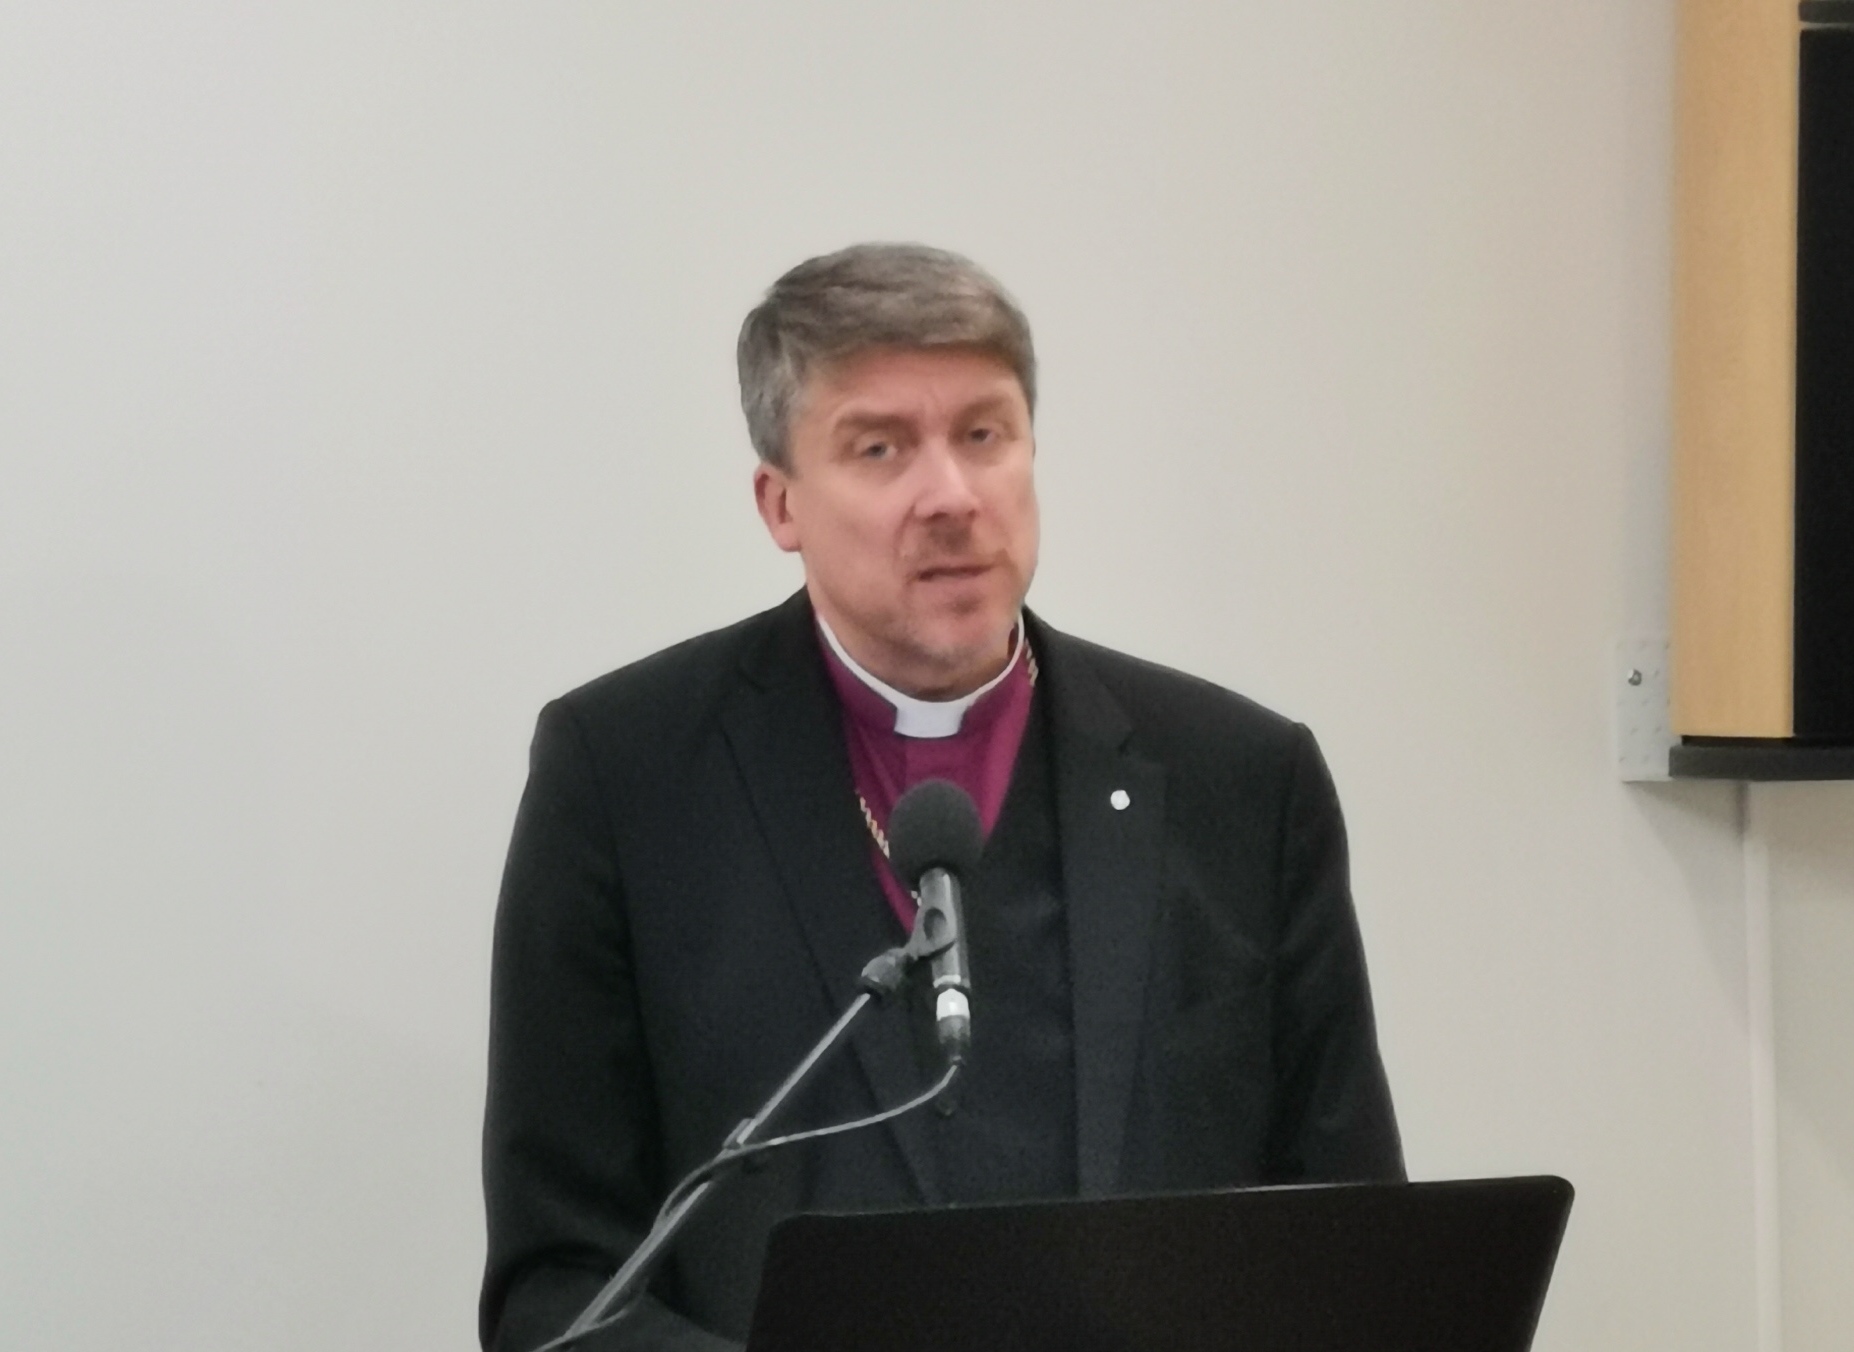 Peapiiskop Urmas Viilma ettekanne keskendus ajavaimule ja ajatutele väärtustele